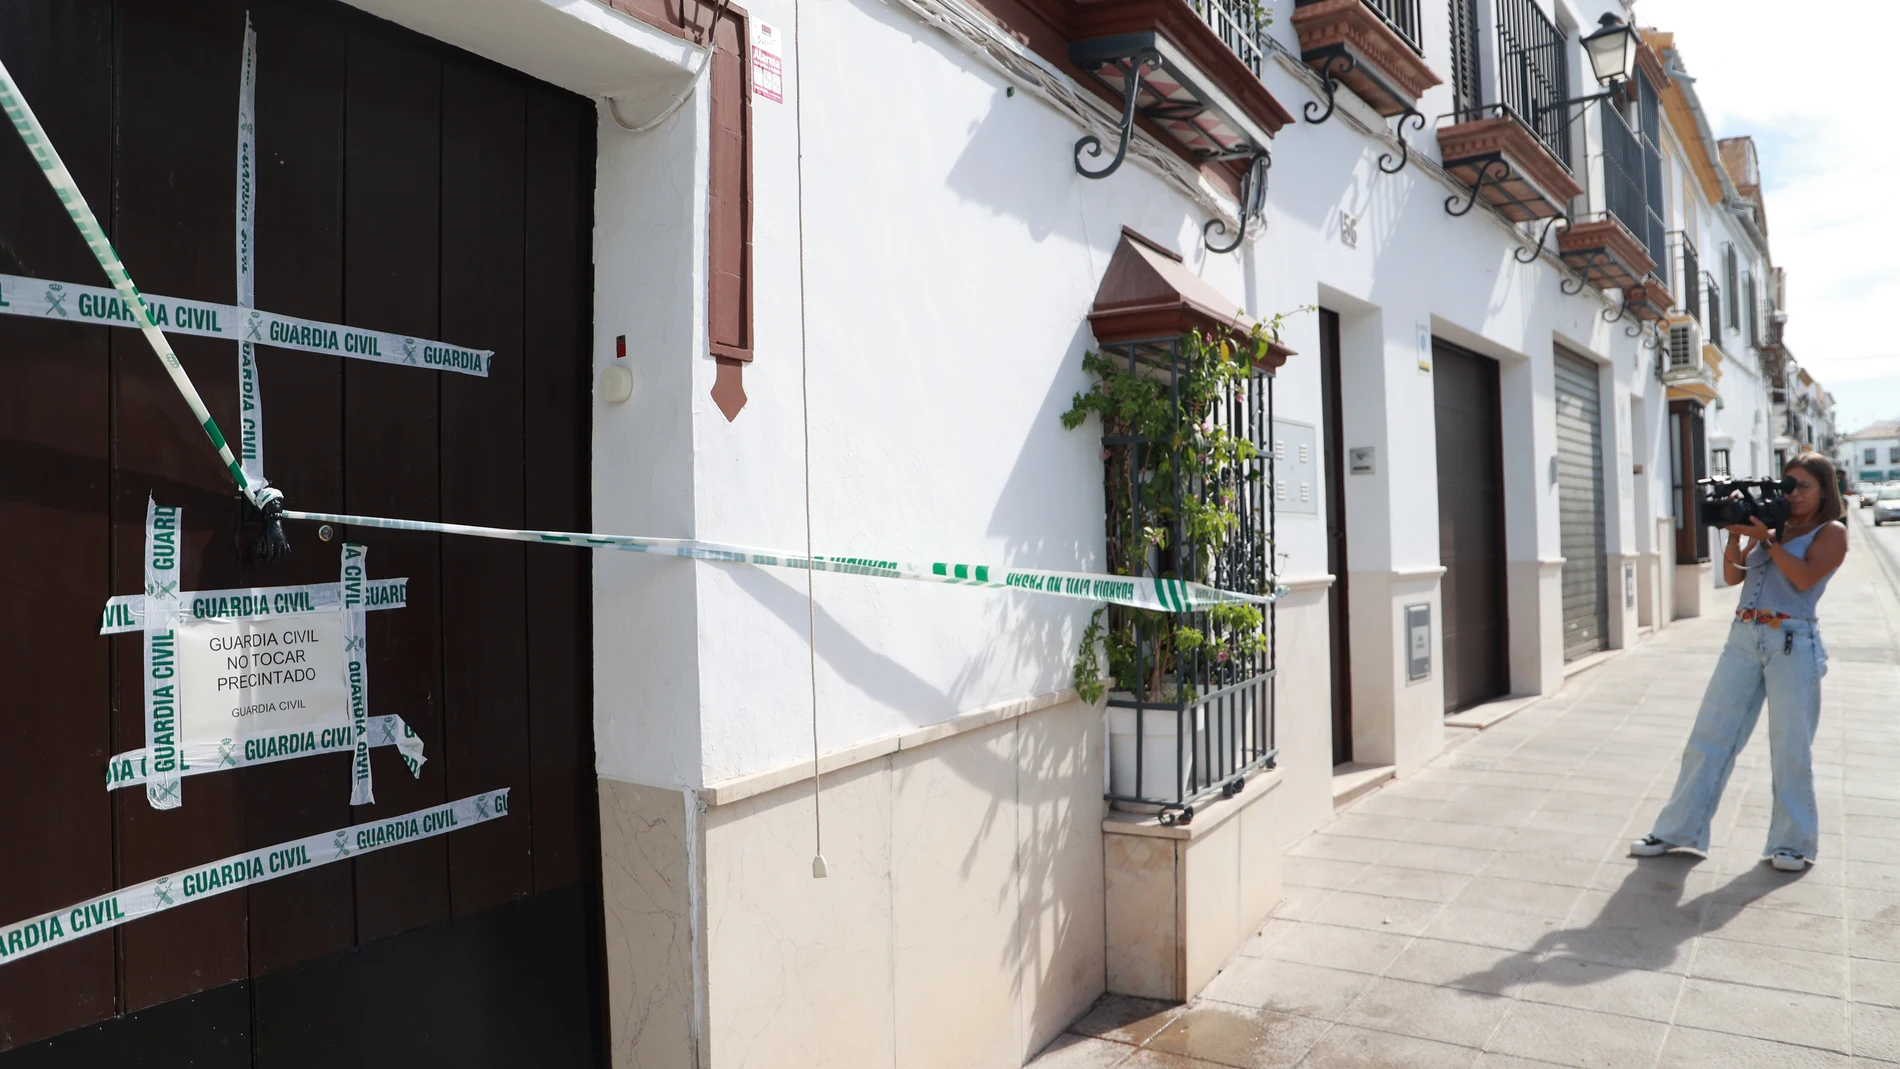 El juzgado encargado del caso de los cadáveres de Osuna (Sevilla) espera las autopsias y la identificación